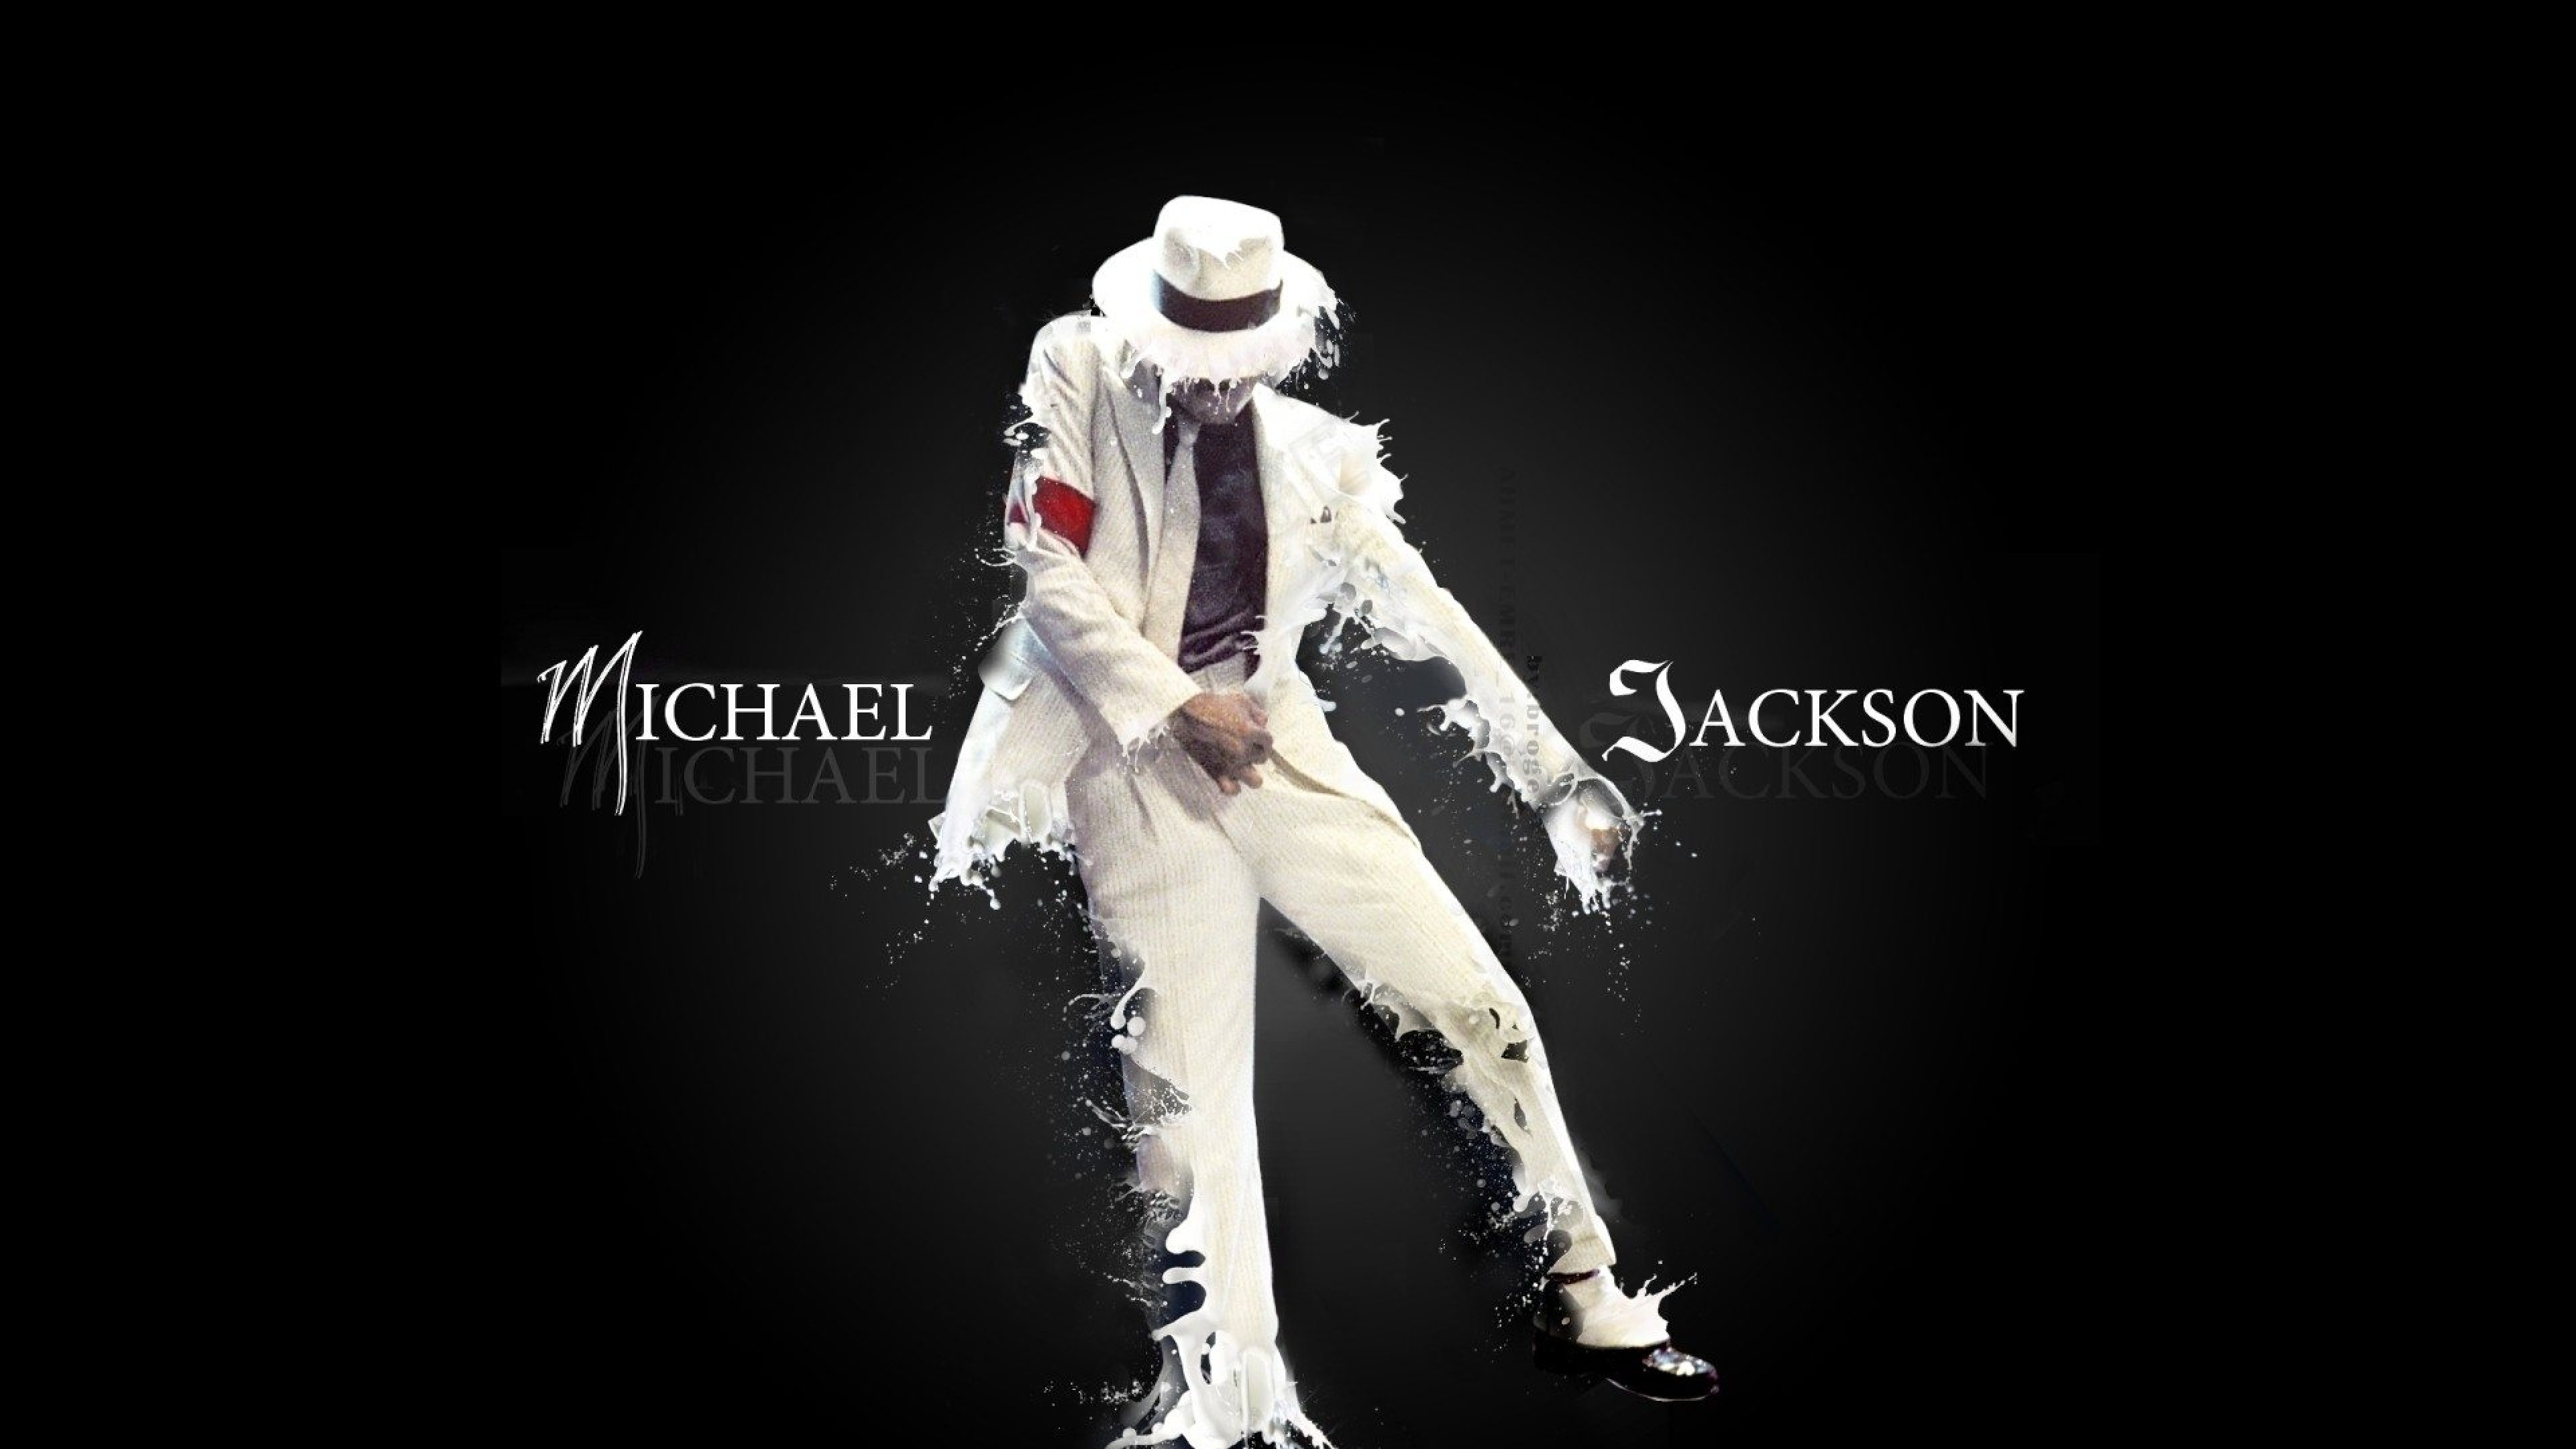 마이클 잭슨 라이브 배경 화면,폰트,어둠,액션 피규어,생기,공연